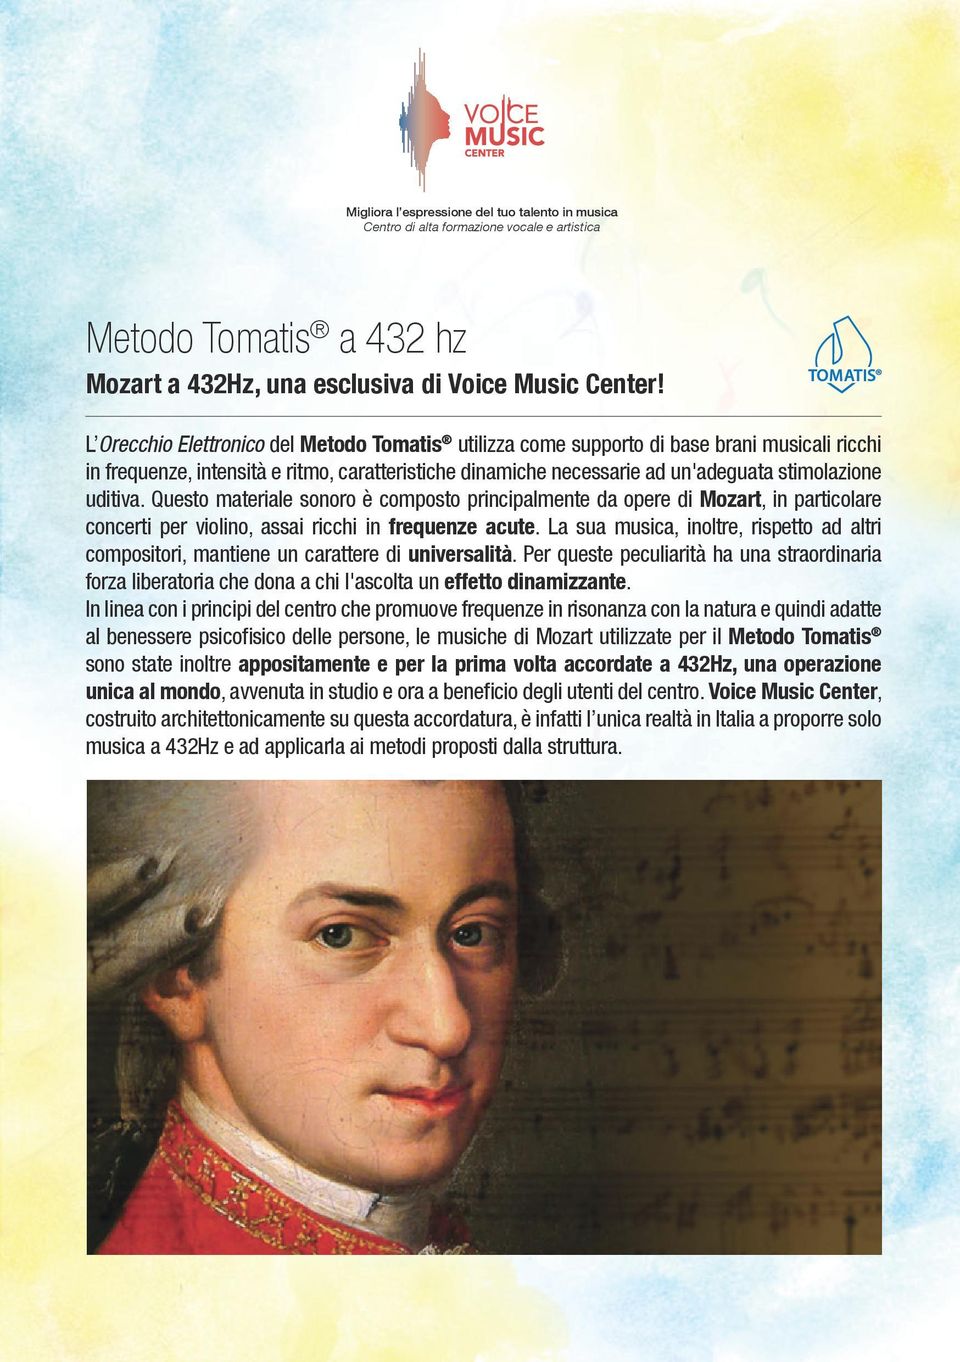 uditiva. Questo materiale sonoro è composto principalmente da opere di Mozart, in particolare concerti per violino, assai ricchi in frequenze acute.